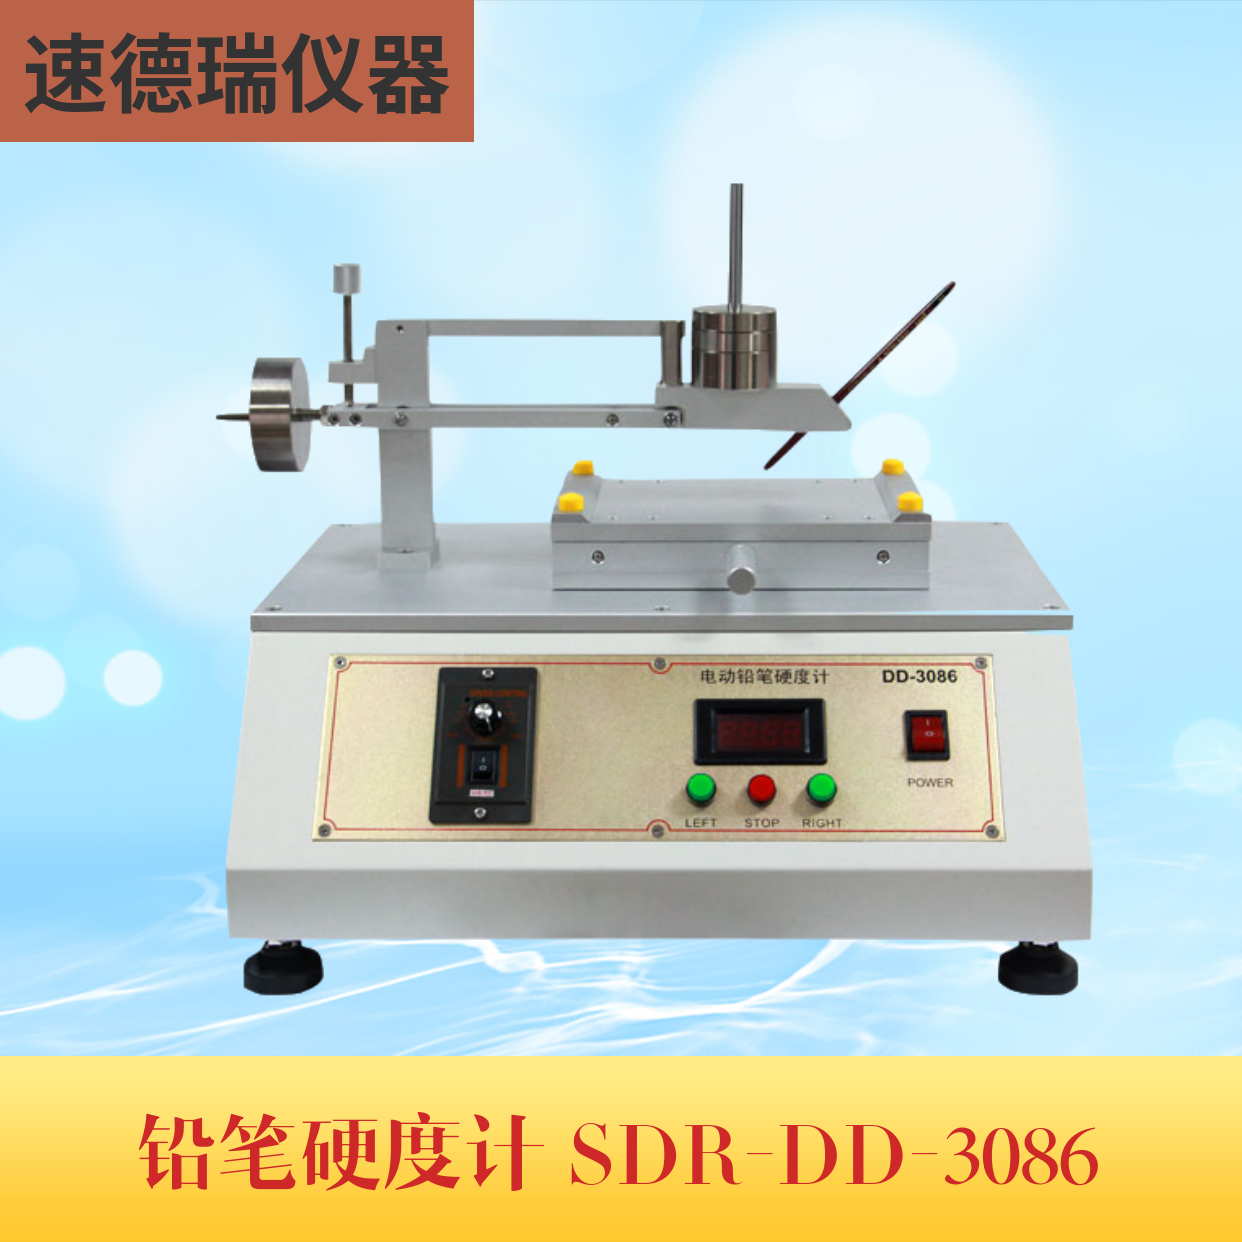 大電動鉛筆硬度計 SDR-DD-3086